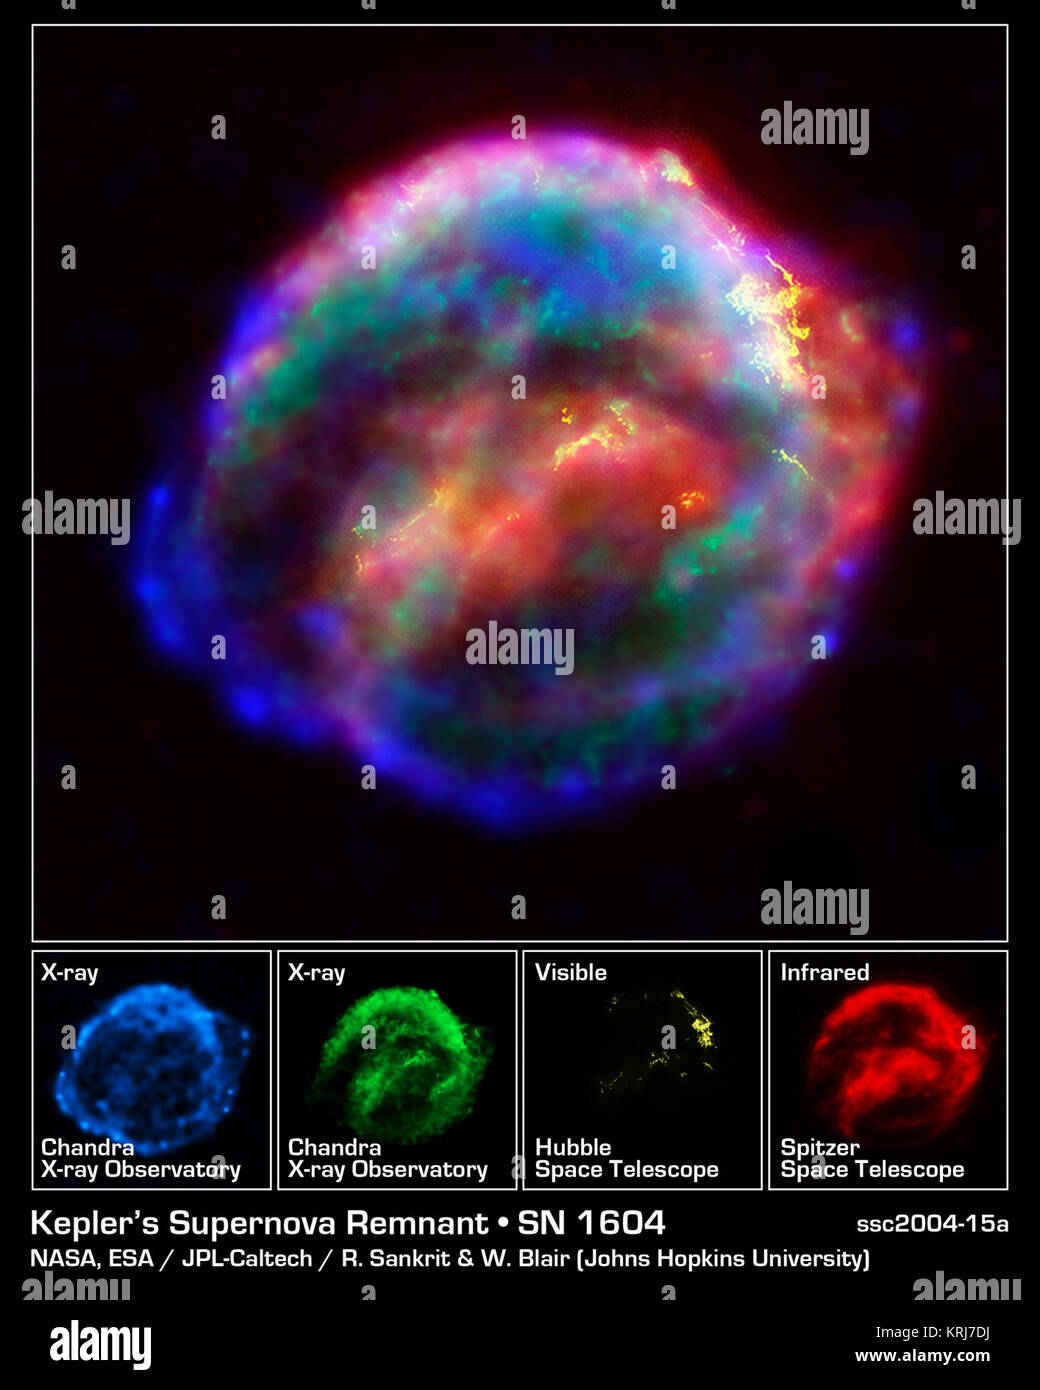 Trois grands observatoires de la NASA, le télescope spatial Hubble, le télescope spatial Spitzer, et l'Observatoire de rayons X Chandra -- s'est associé à la sonde reste en expansion d'une supernova, appelée supernova de Kepler, d'abord vu il y a 400 ans par programme météo, y compris célèbre astronome Johannes Kepler. L'image combinée dévoile un carénage en forme de bulles de gaz et de poussière qui est de 14 années-lumière de large et s'élargit à 4 millions de kilomètres par heure (2 000 kilomètres par seconde). Les observations de chaque télescope mettent en évidence des caractéristiques distinctes de la supernova remnant, un fer à repasser de shell-r Banque D'Images